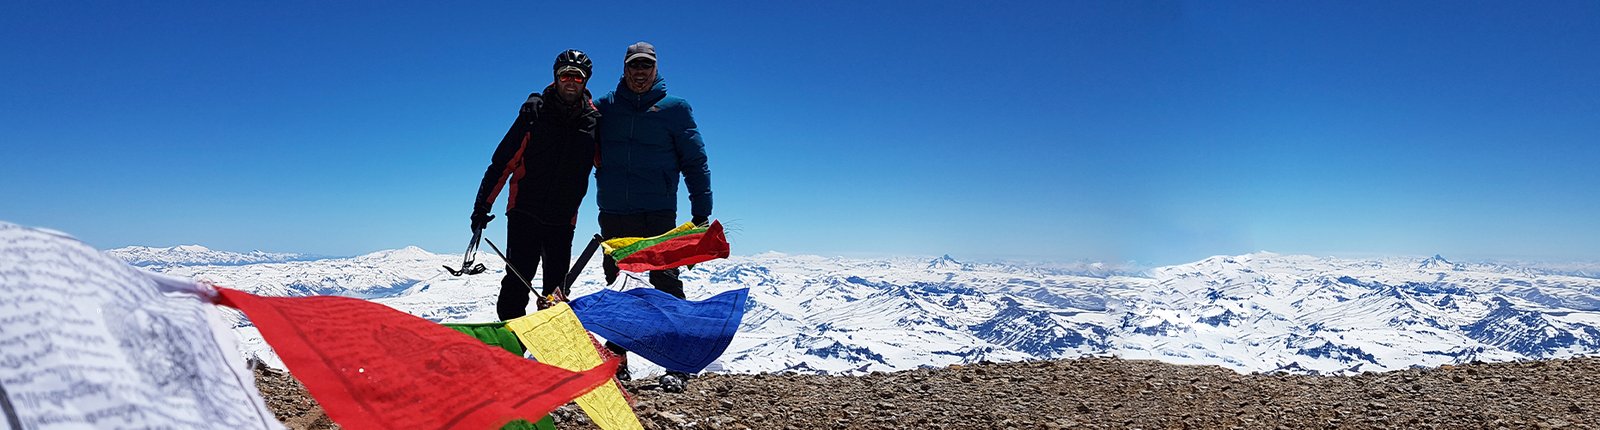 coppiexplora- aventura -argentina-expedicion-montaña-ascensiones-jujuy-mendoza -patagonia-